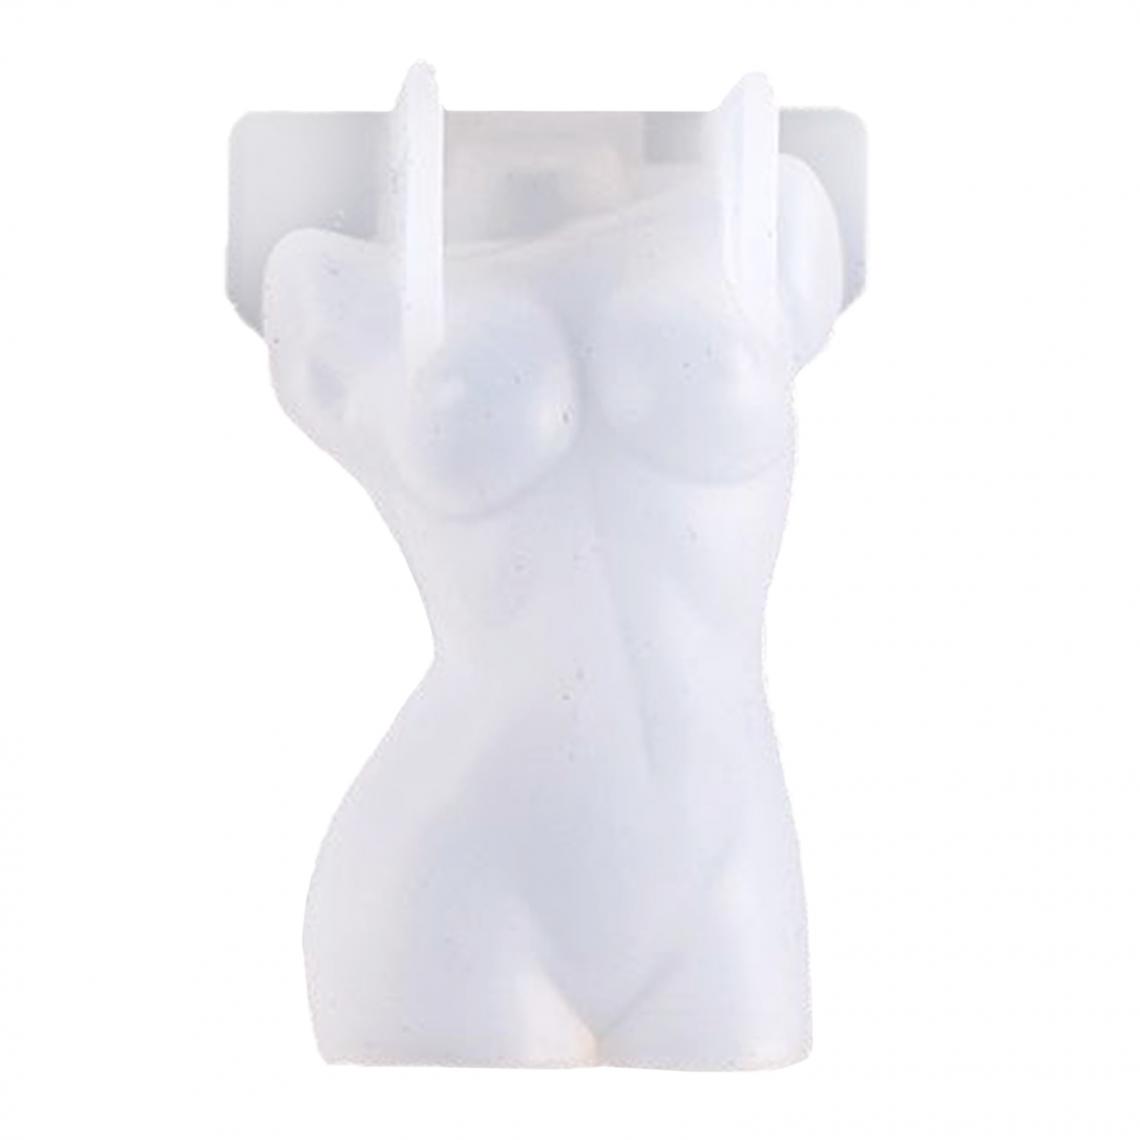 marque generique - 3D Bougie Moules Femmes Hommes Torse Savon Moule Figurine Artisanat Moules Modèle 8 - Bougies